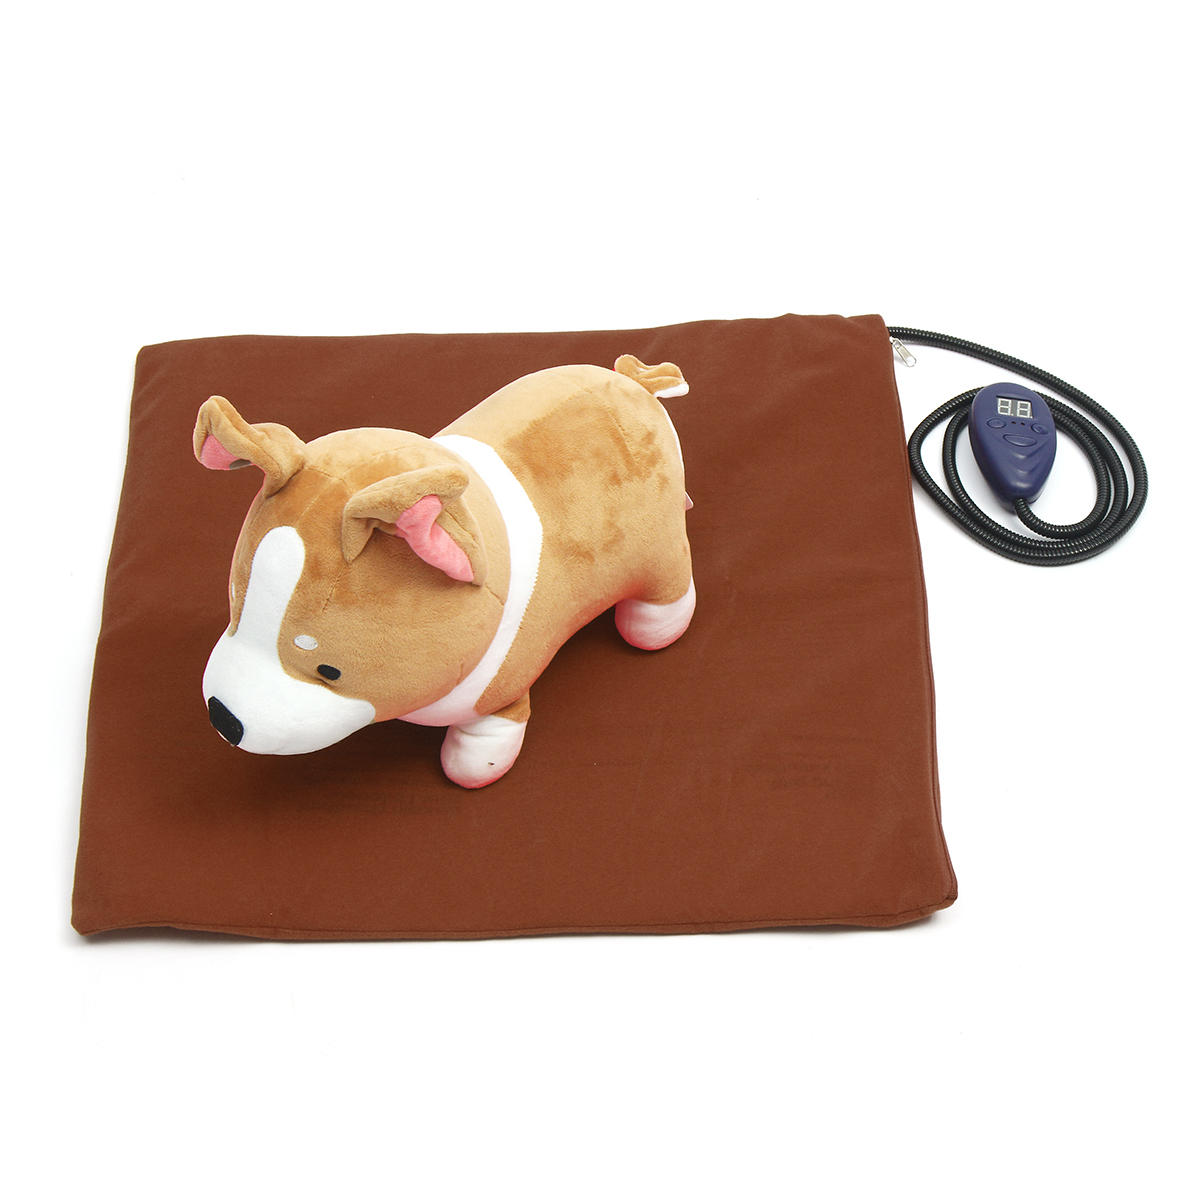 50 x 50 cm elektrische Heizung Heizung beheizte Bettmatte Pad Decke ohne Kabel für Haustier Hund Katze Kaninchen